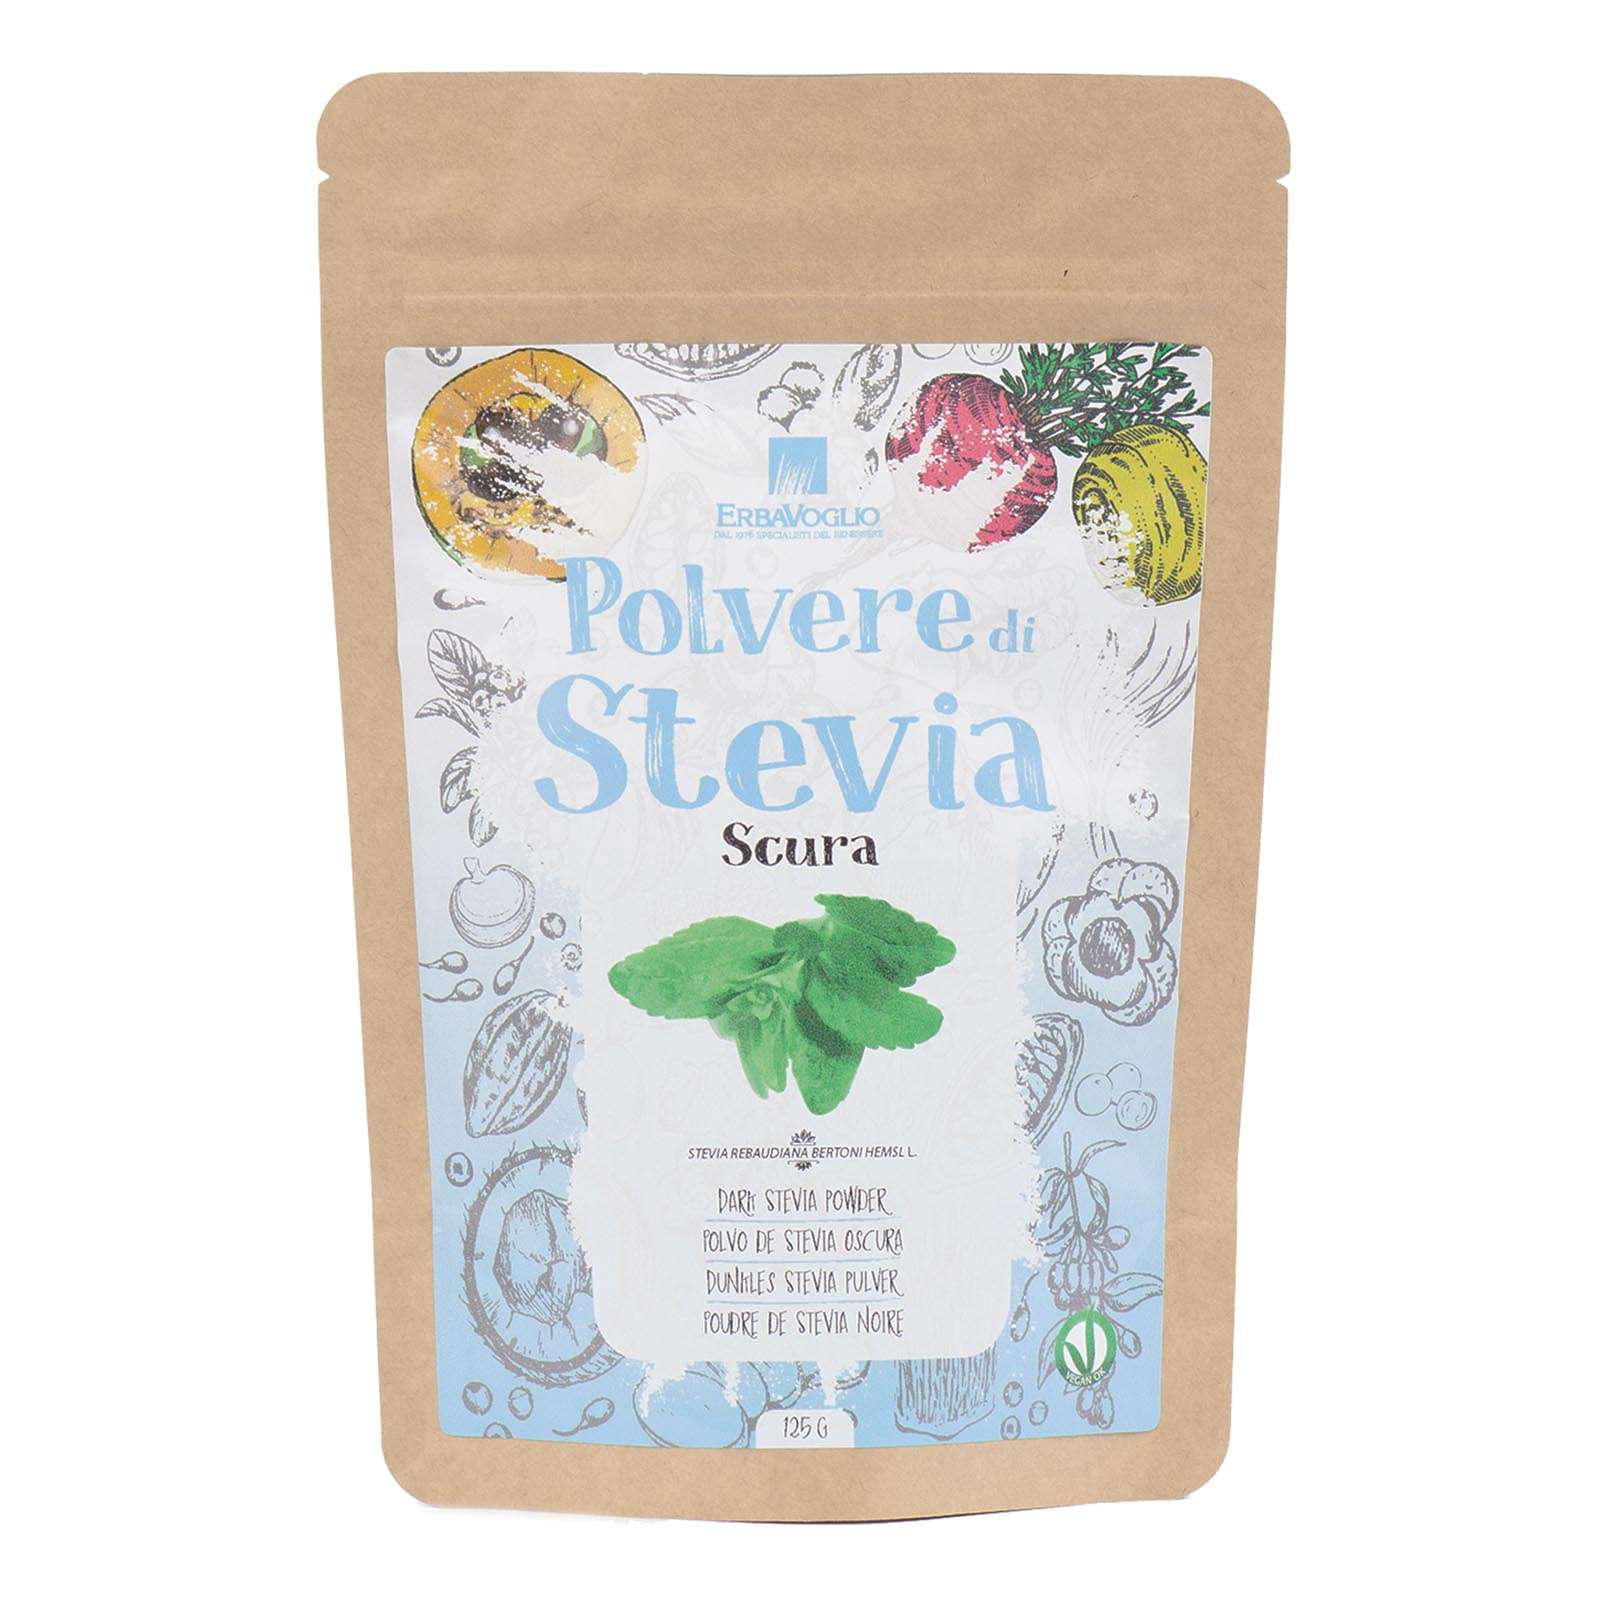 Polvere di Stevia Scura